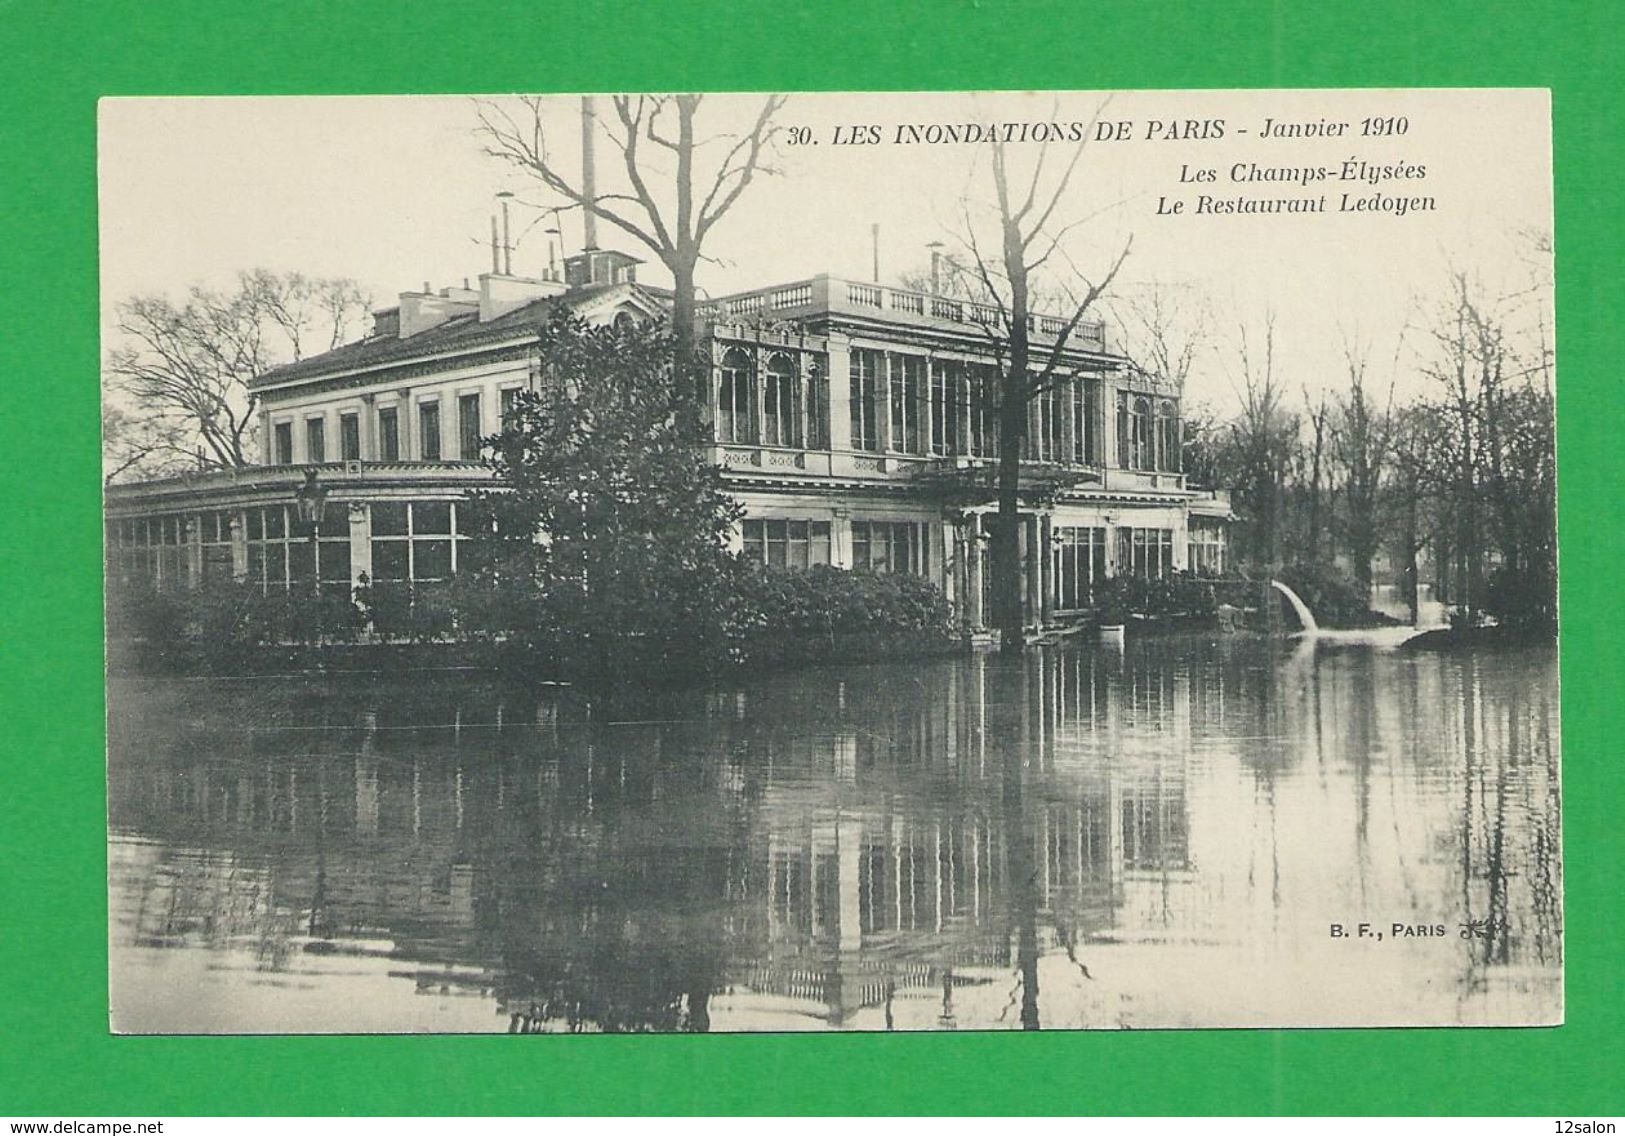 Cartes Postales 75 PARIS INONDATIONS DE 1910 Les Champs Elysées Restaurant Ledoyen - Paris Flood, 1910